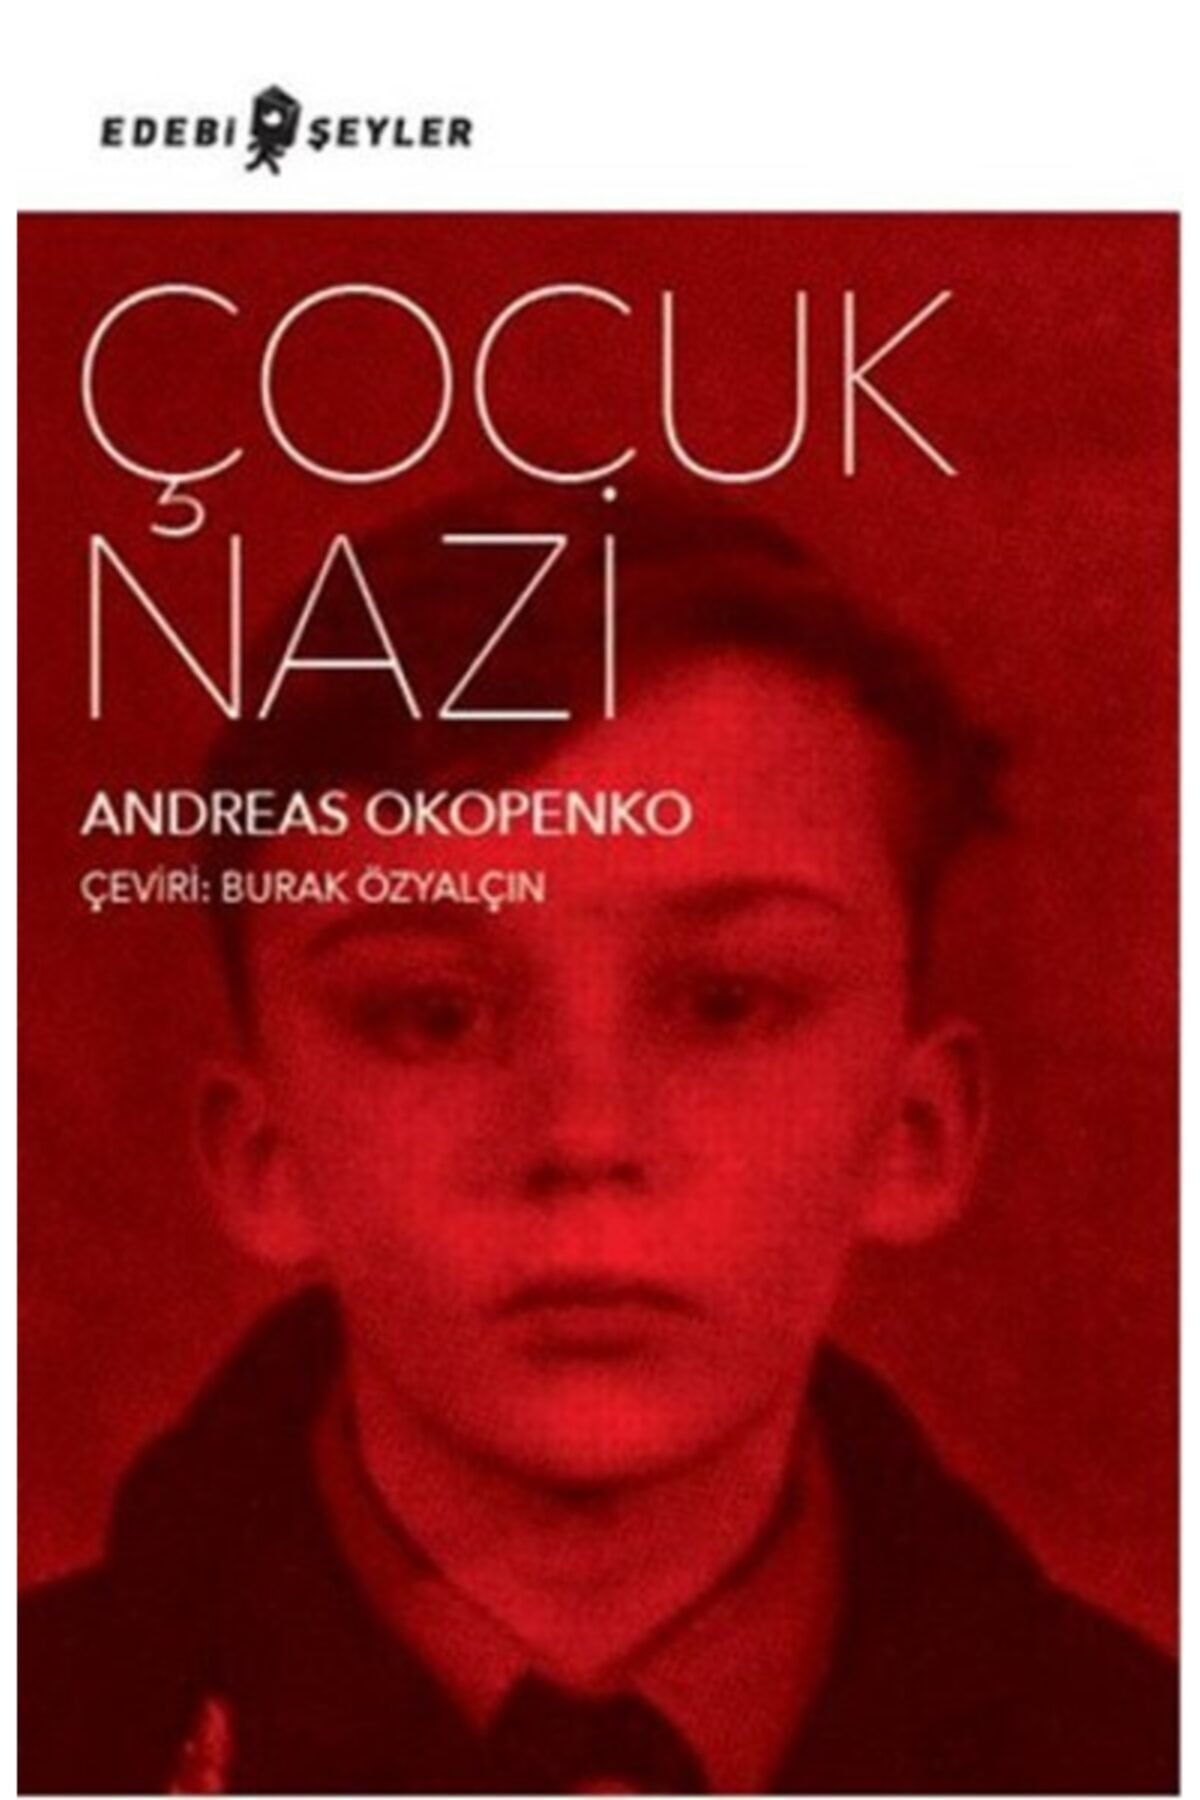 Edebi Şeyler Çocuk Nazi - Andreas Okopenko